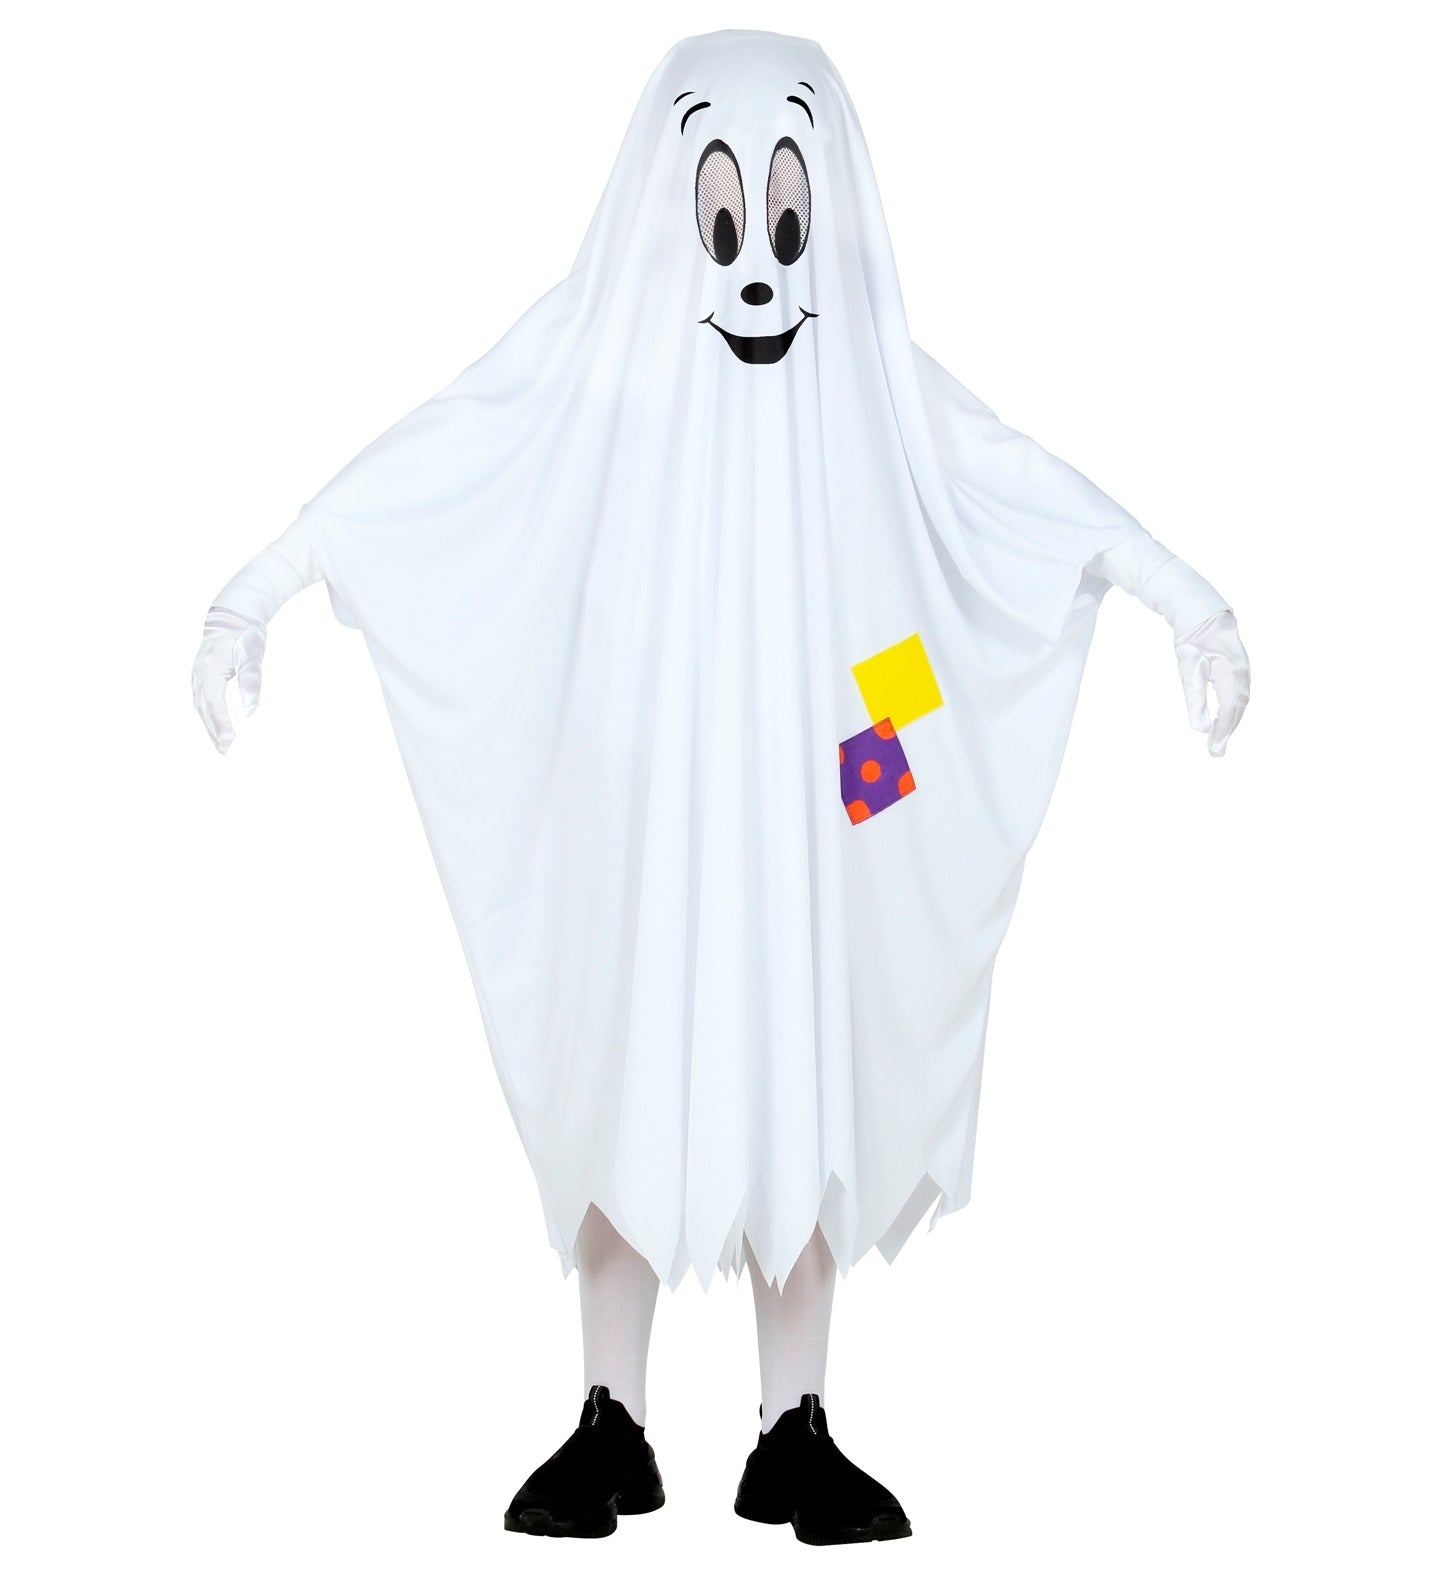 Widmann - Spook & Skelet Kostuum - Het Vriendelijke Spookje Kind Kostuum - wit / beige - Maat 116 - Halloween - Verkleedkleding